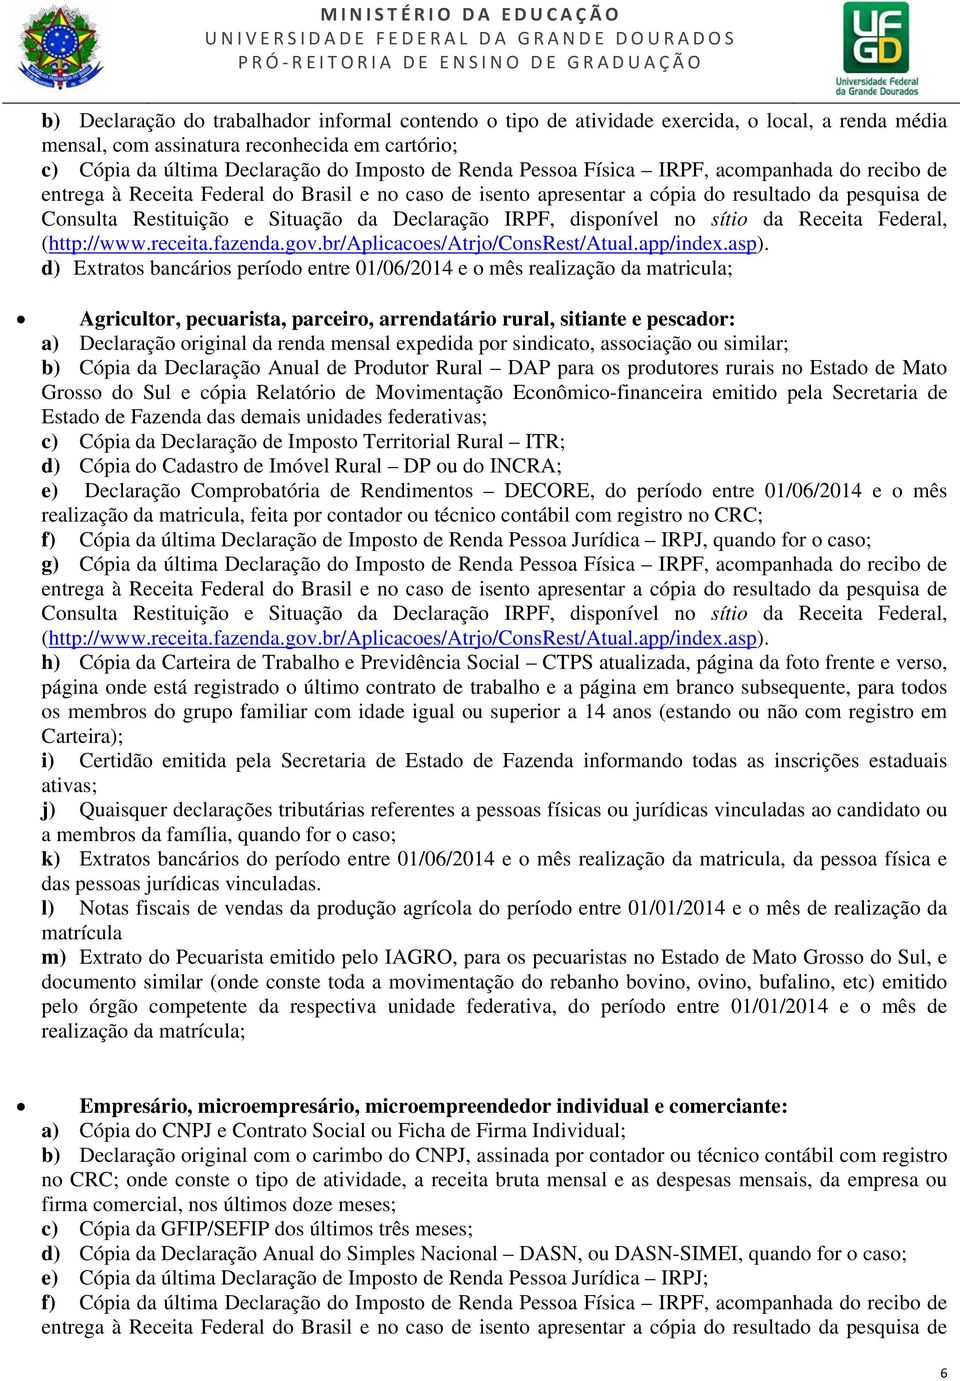 a) Declaração original da renda mensal expedida por sindicato, associação ou similar; b) Cópia da Declaração Anual de Produtor Rural DAP para os produtores rurais no Estado de Mato Grosso do Sul e